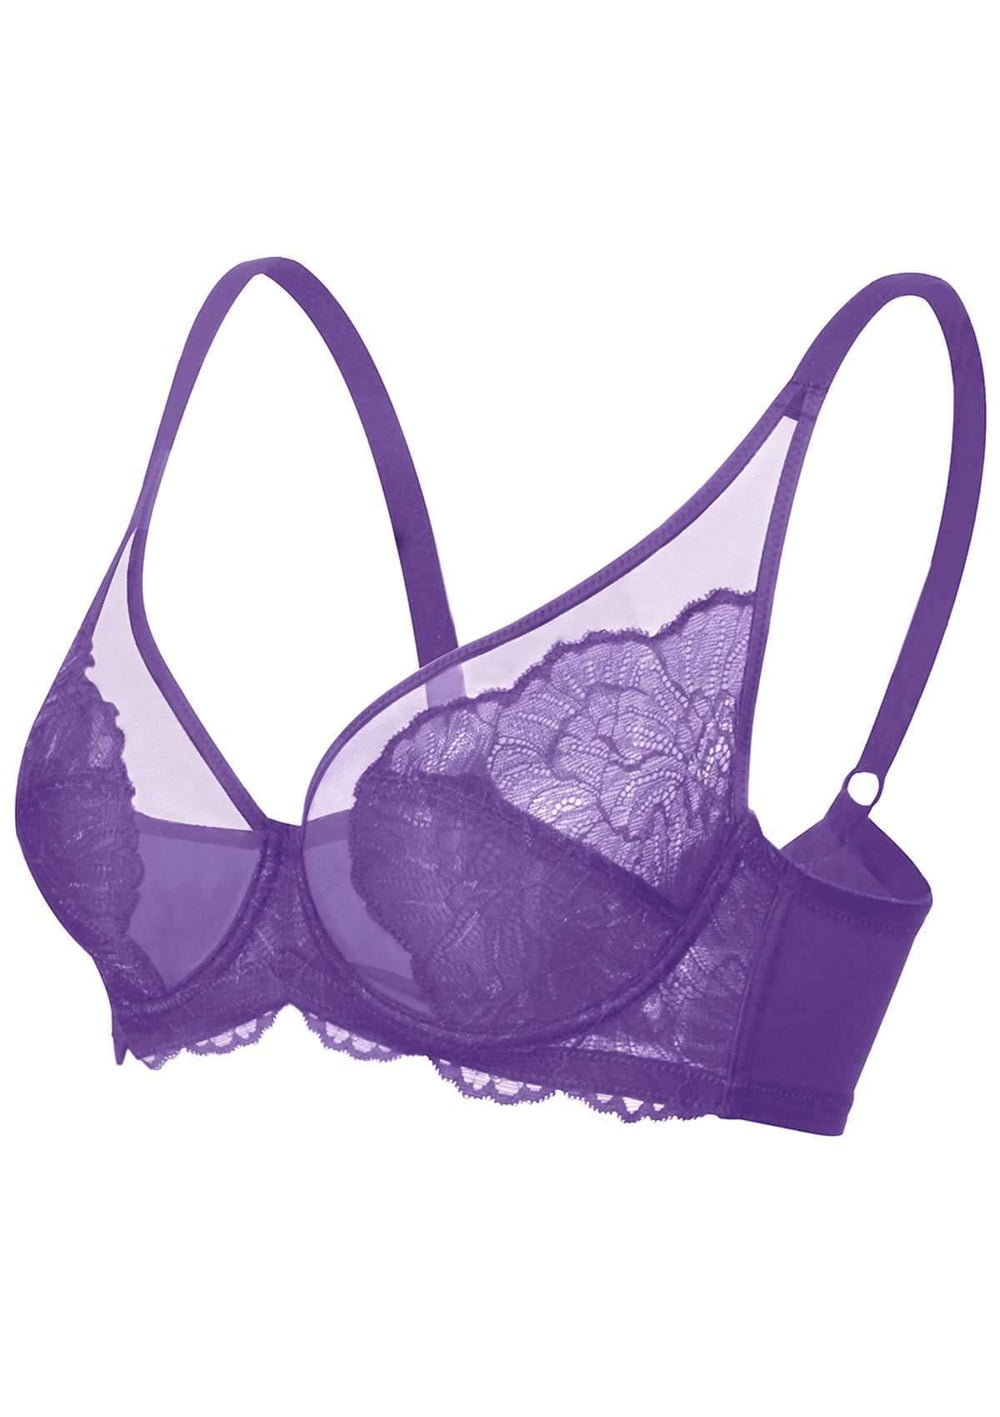 Eashery Lace Bras for Women Women's Cotton Unlined Underwire Bra Purple 38  85